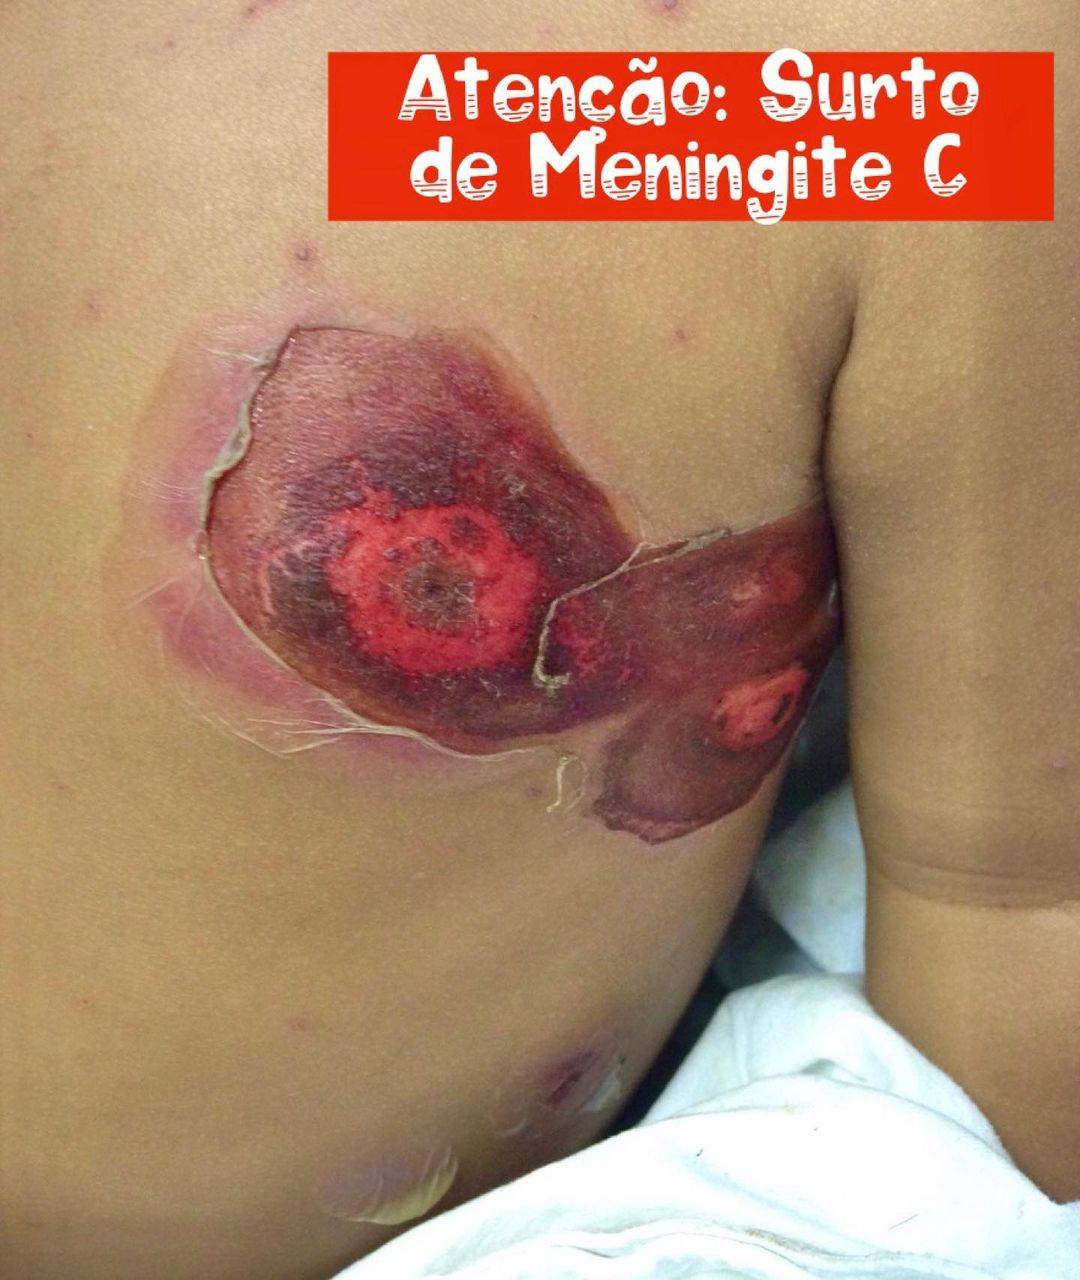 Atenção: Surto de Meningite C